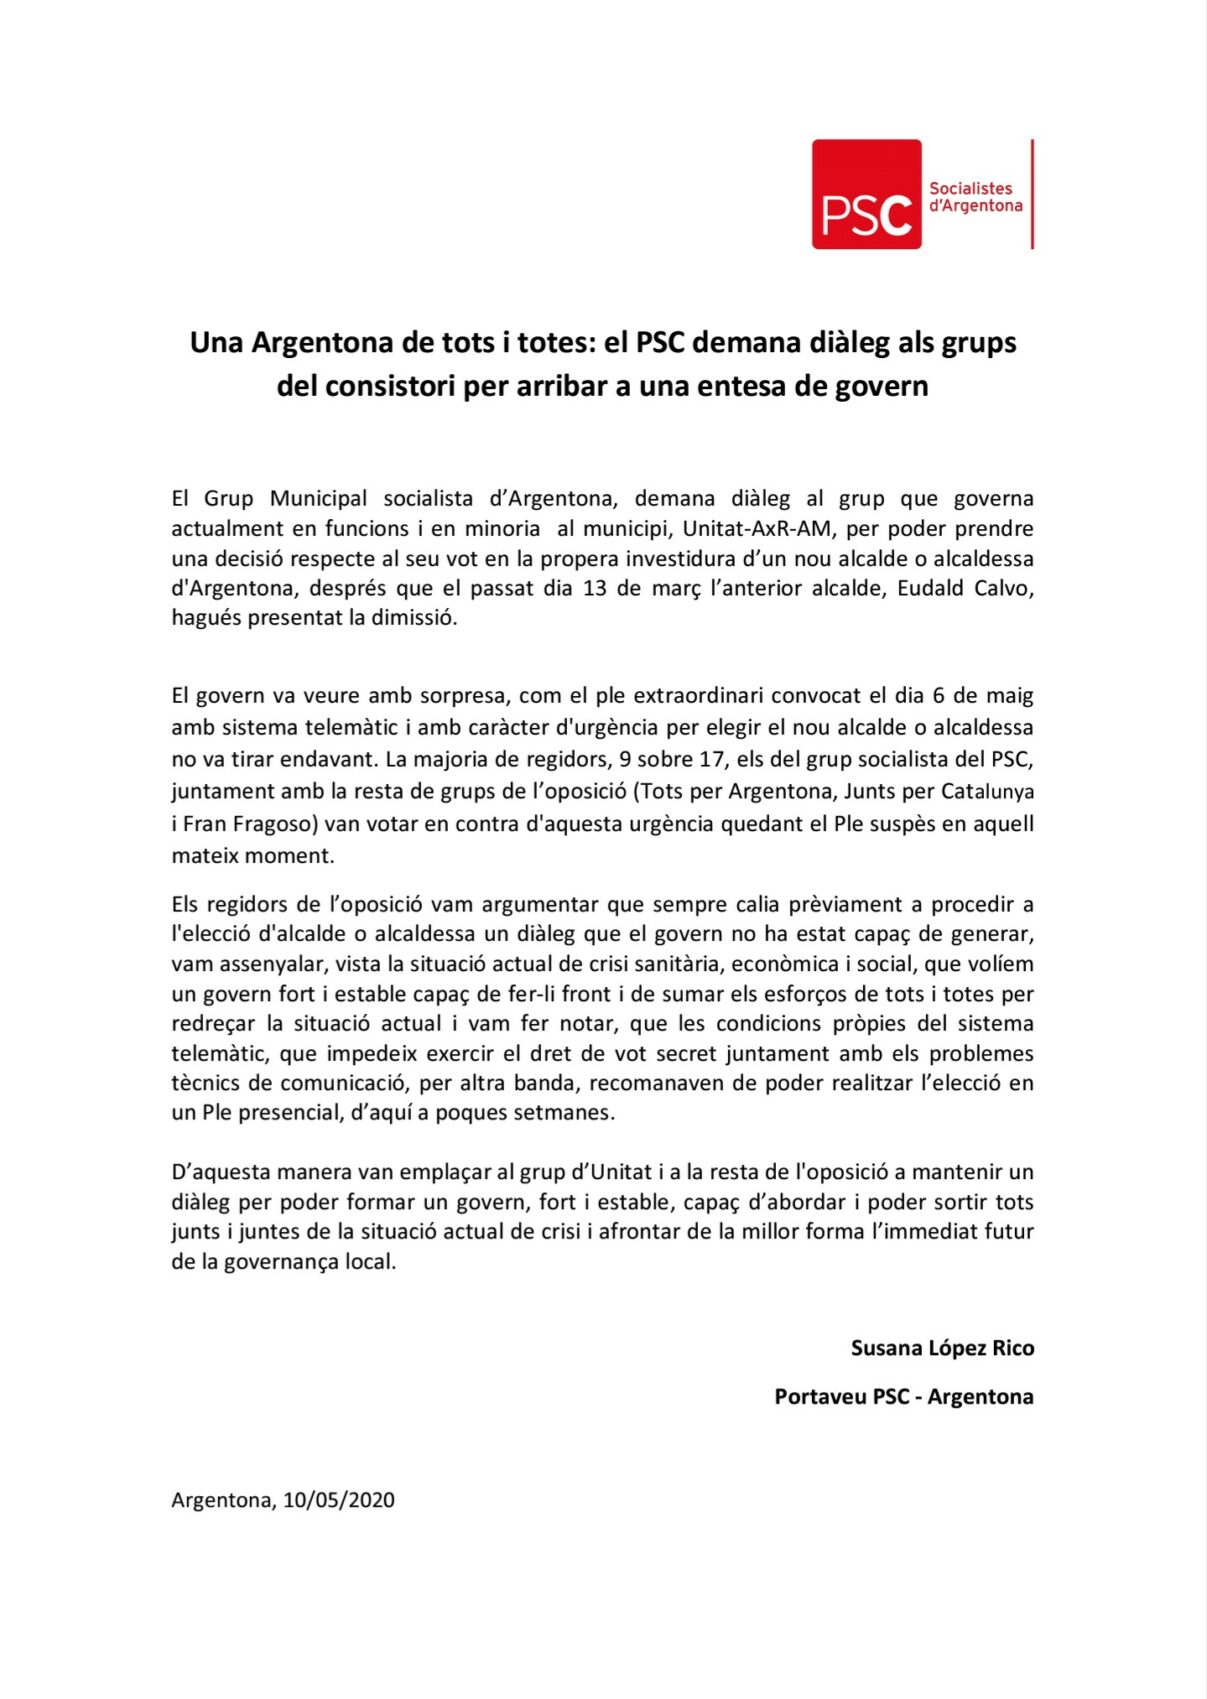 El PSC Argentona pide diálogo a los grupos del consistorio por